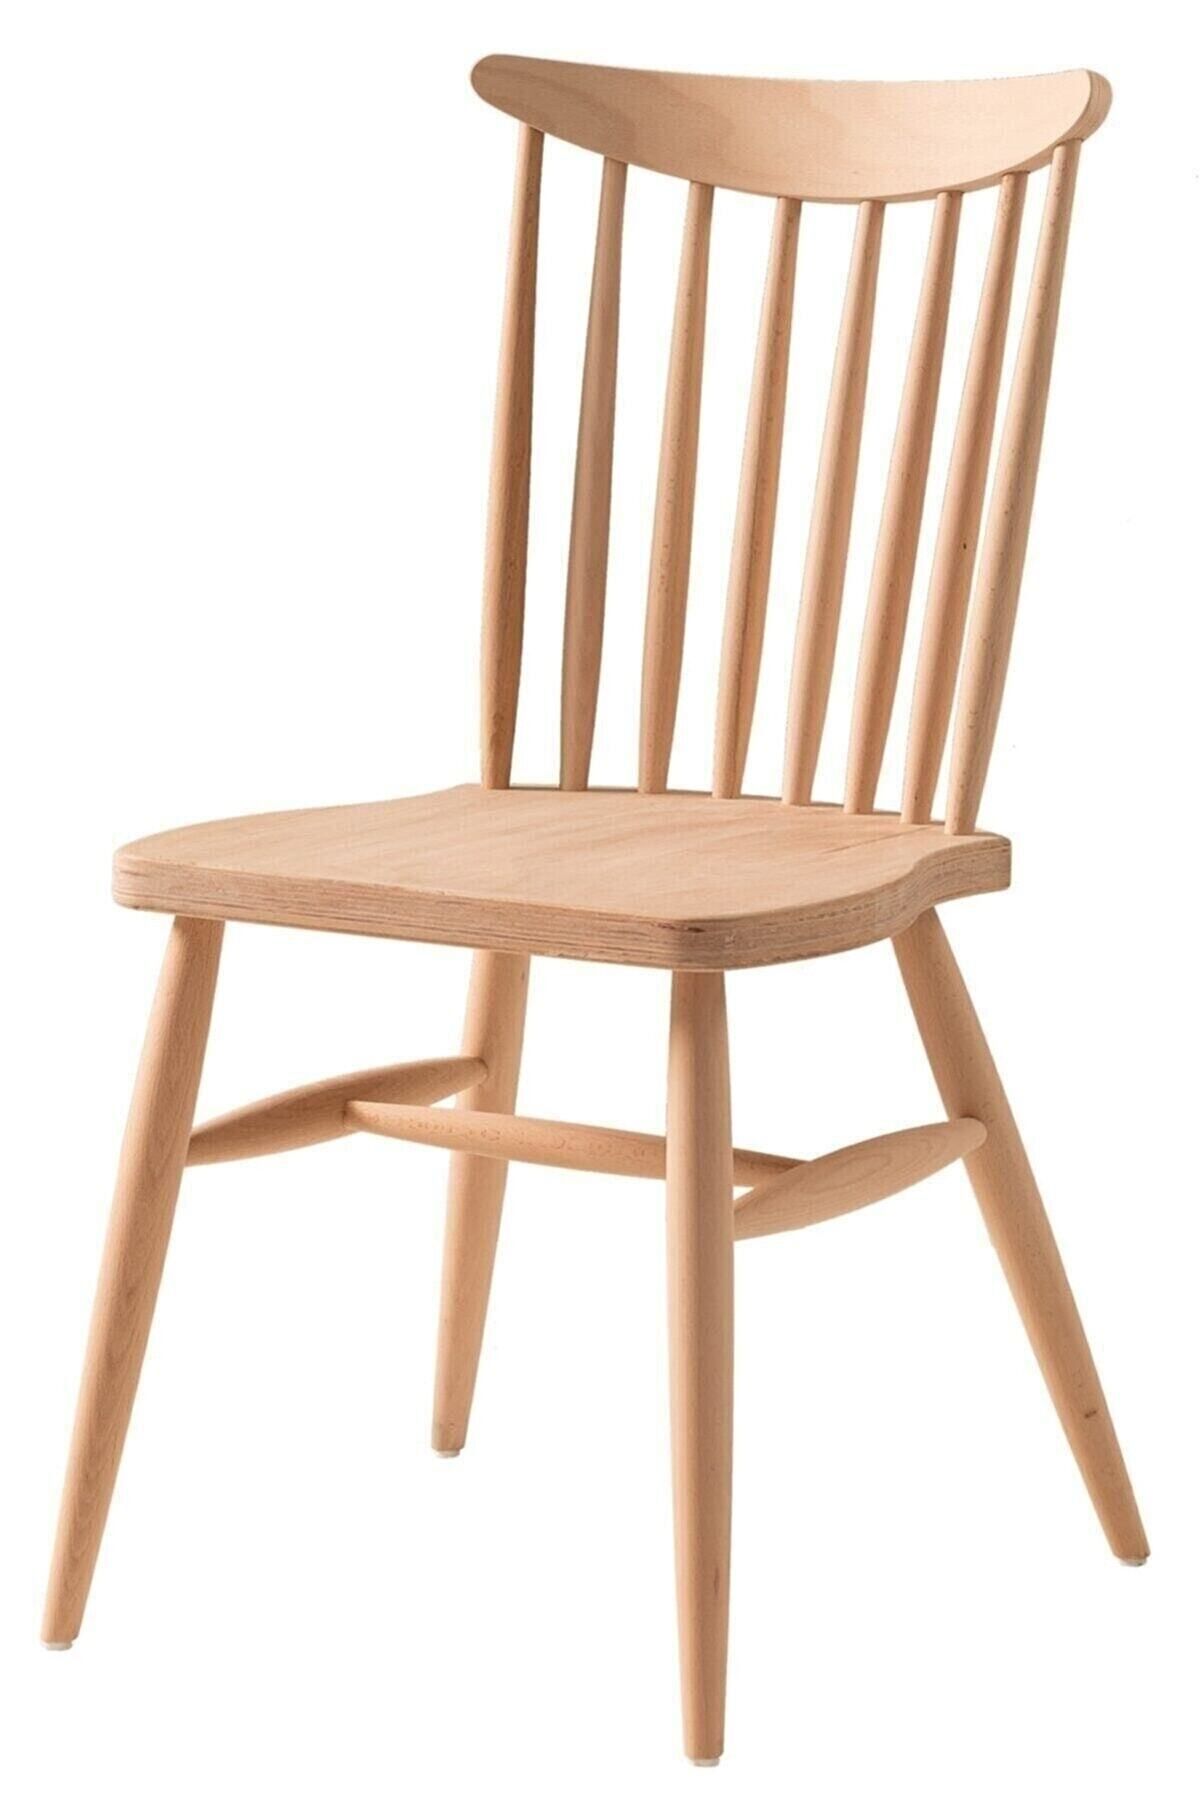 CLK TEKSTİL Ahşap Ham Yıldız Sandalye Cilasız Ahşap Mutfak Sandalyesi